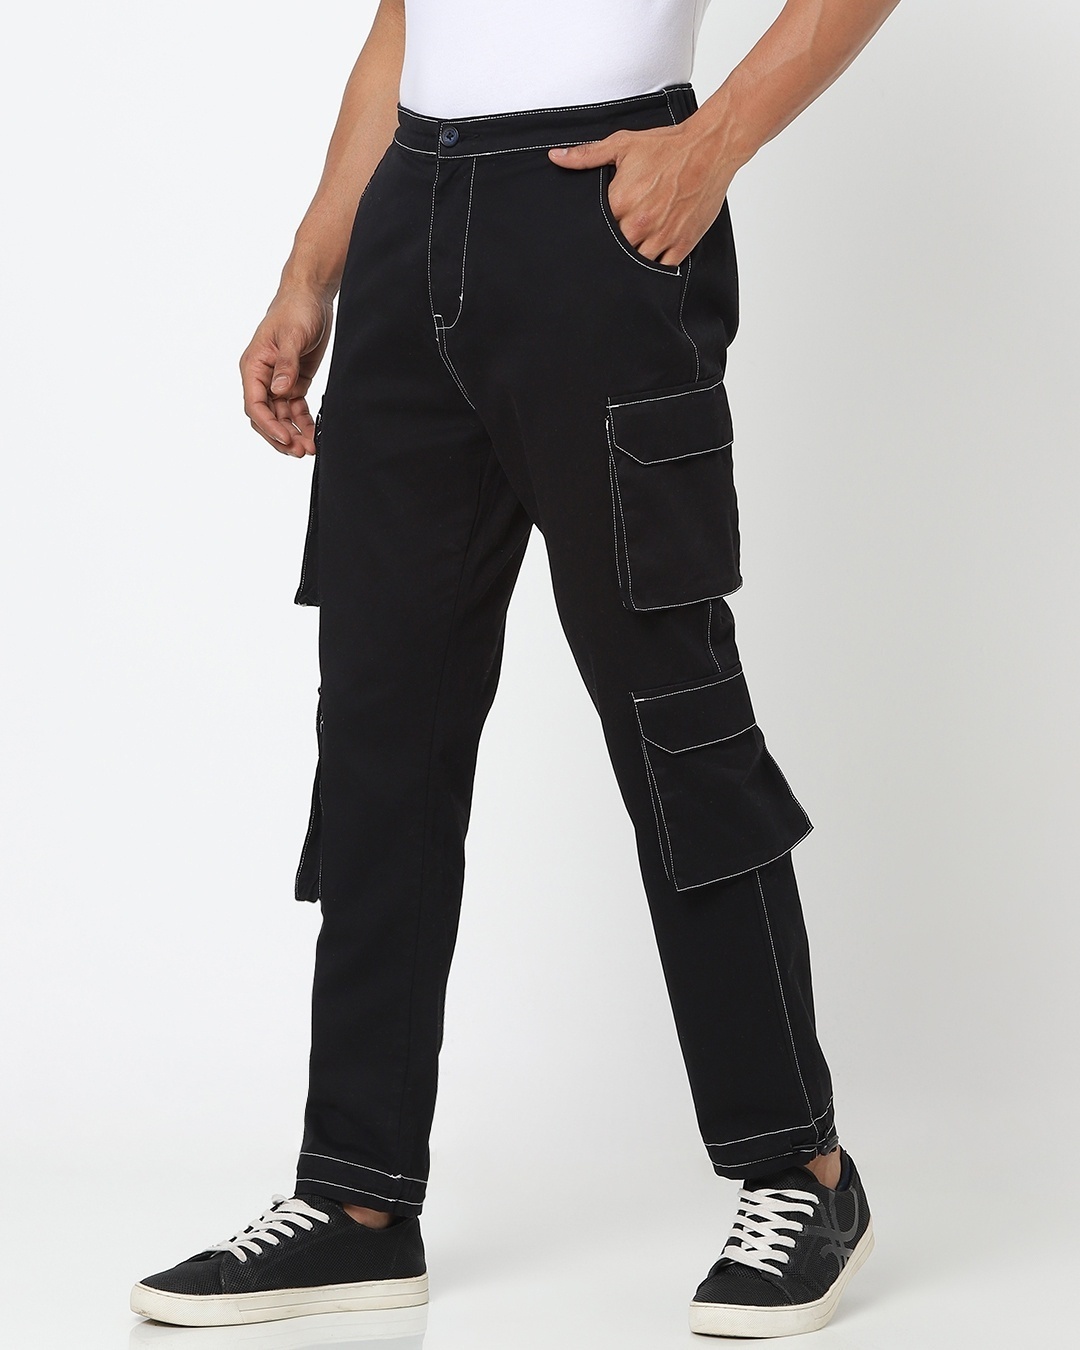 Buy Black Solid Contrast Stitch 7 pocket Trouser for Men black Online ...